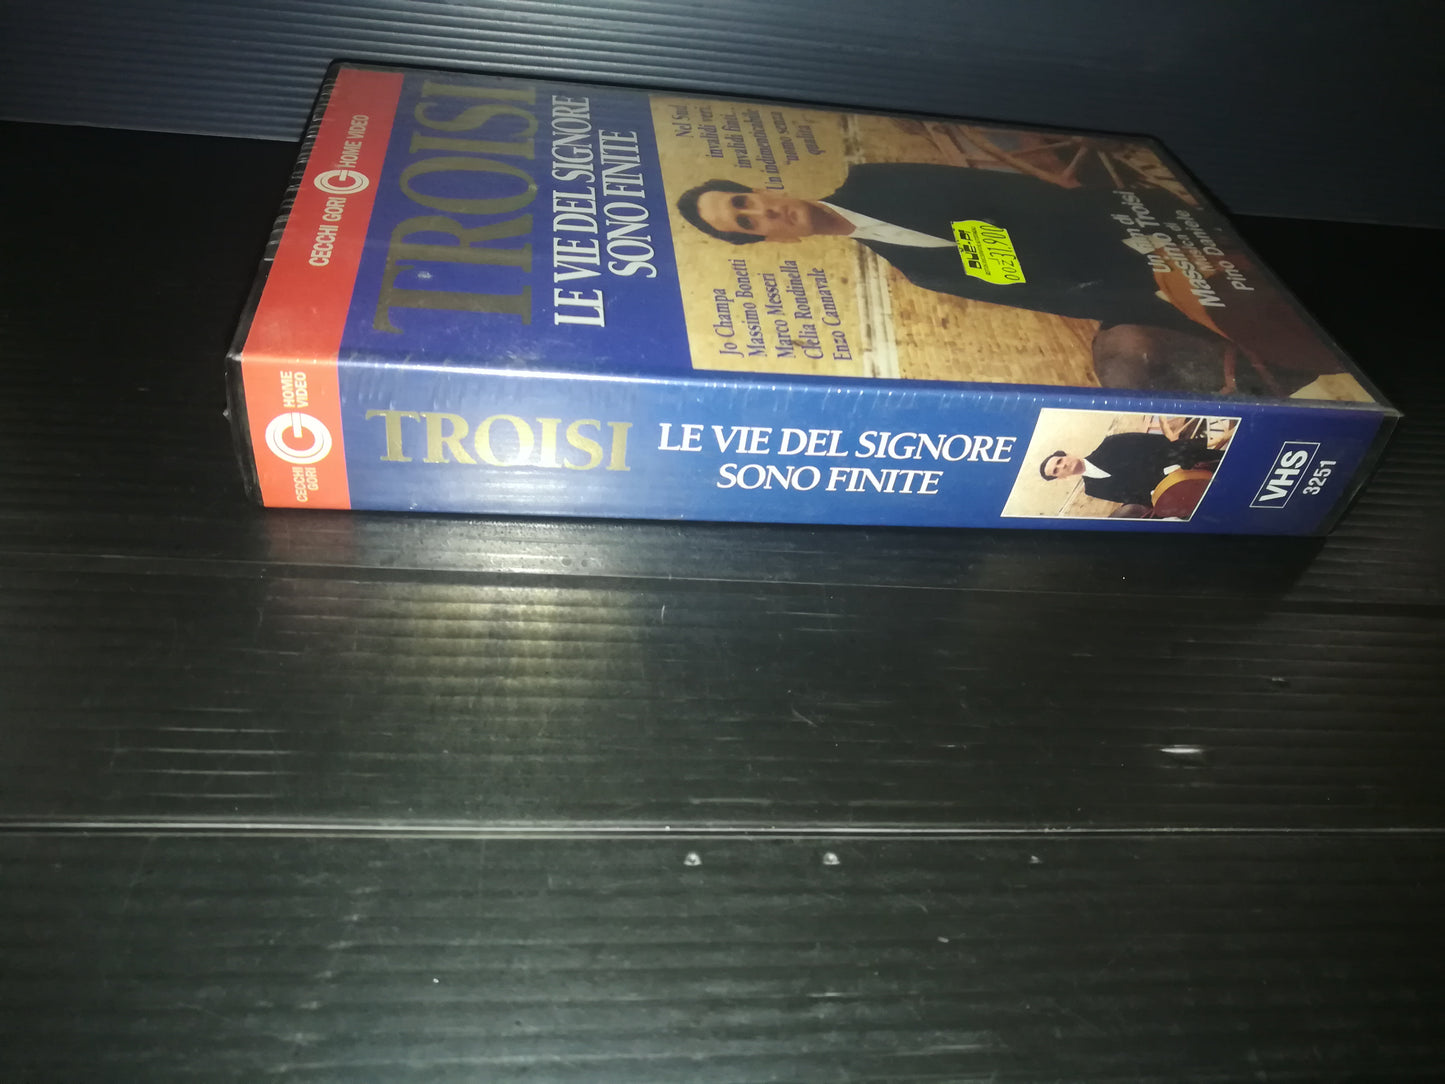 "Le Vie del Signore sono Finite" Massimo Troisi VHS Cecchi Gori